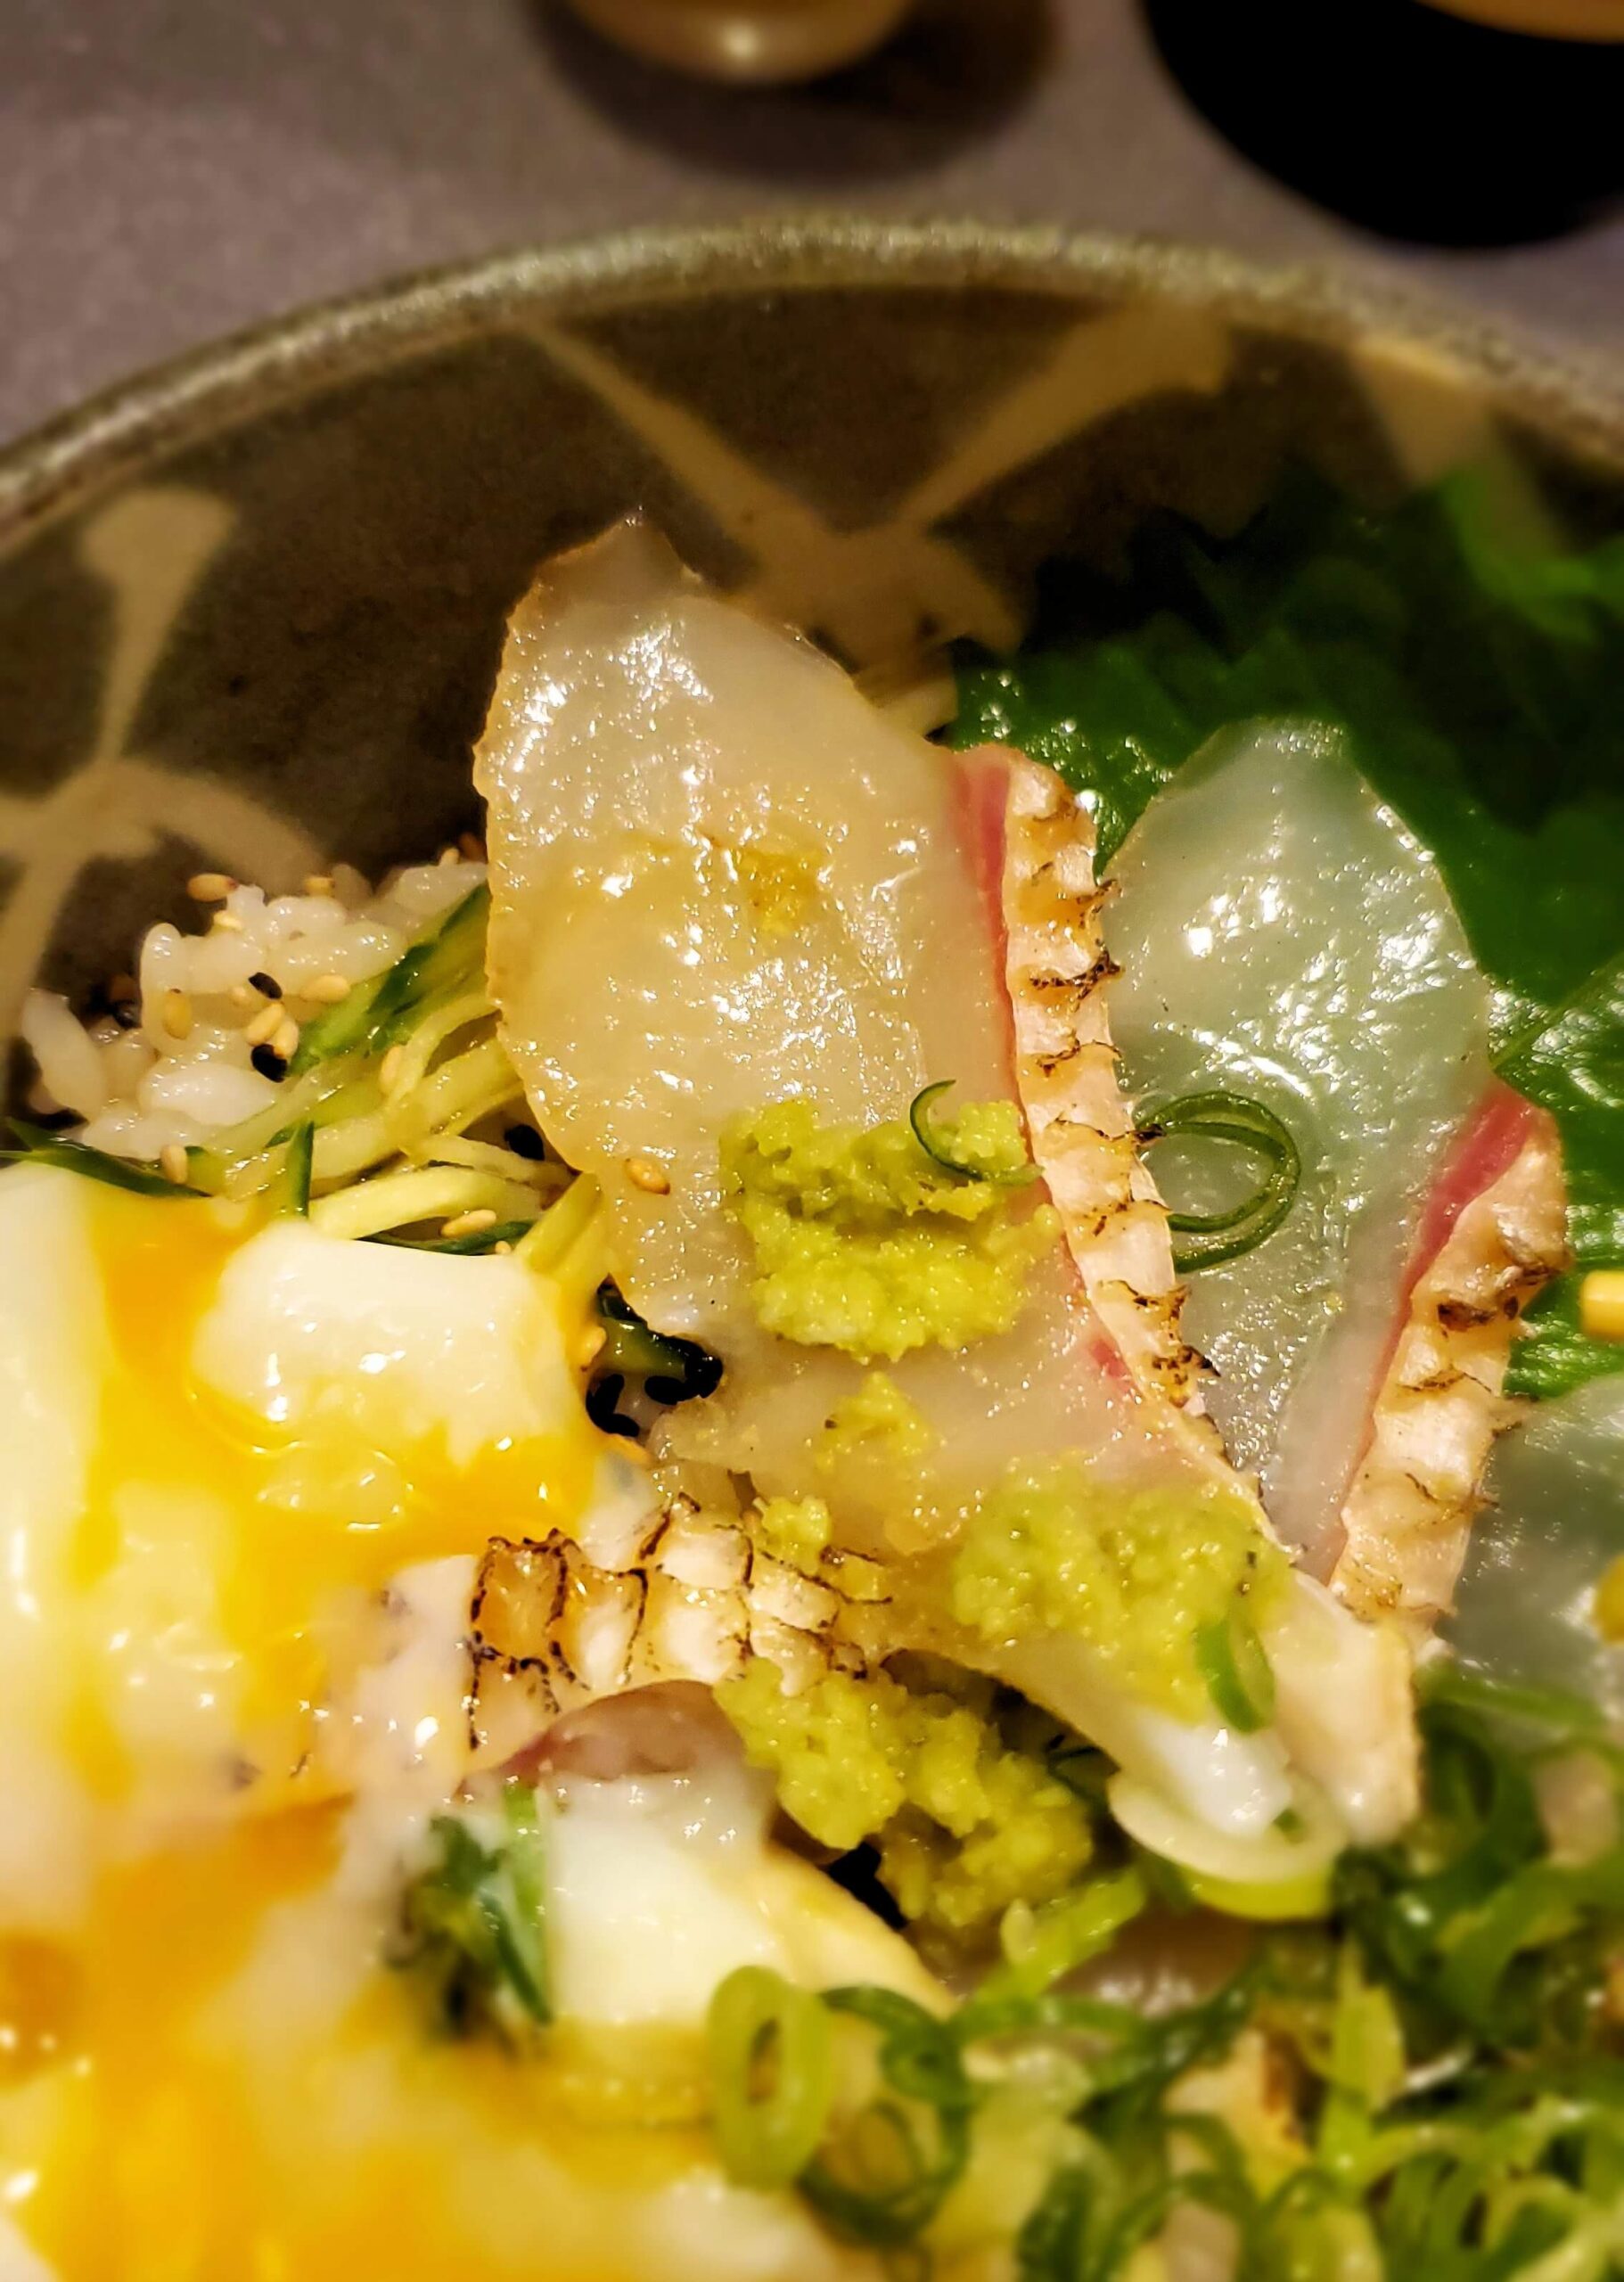 松山城ロープウェイ乗り場近くにあった、寿司屋「彩」で注文した炙り鯛丼の刺身